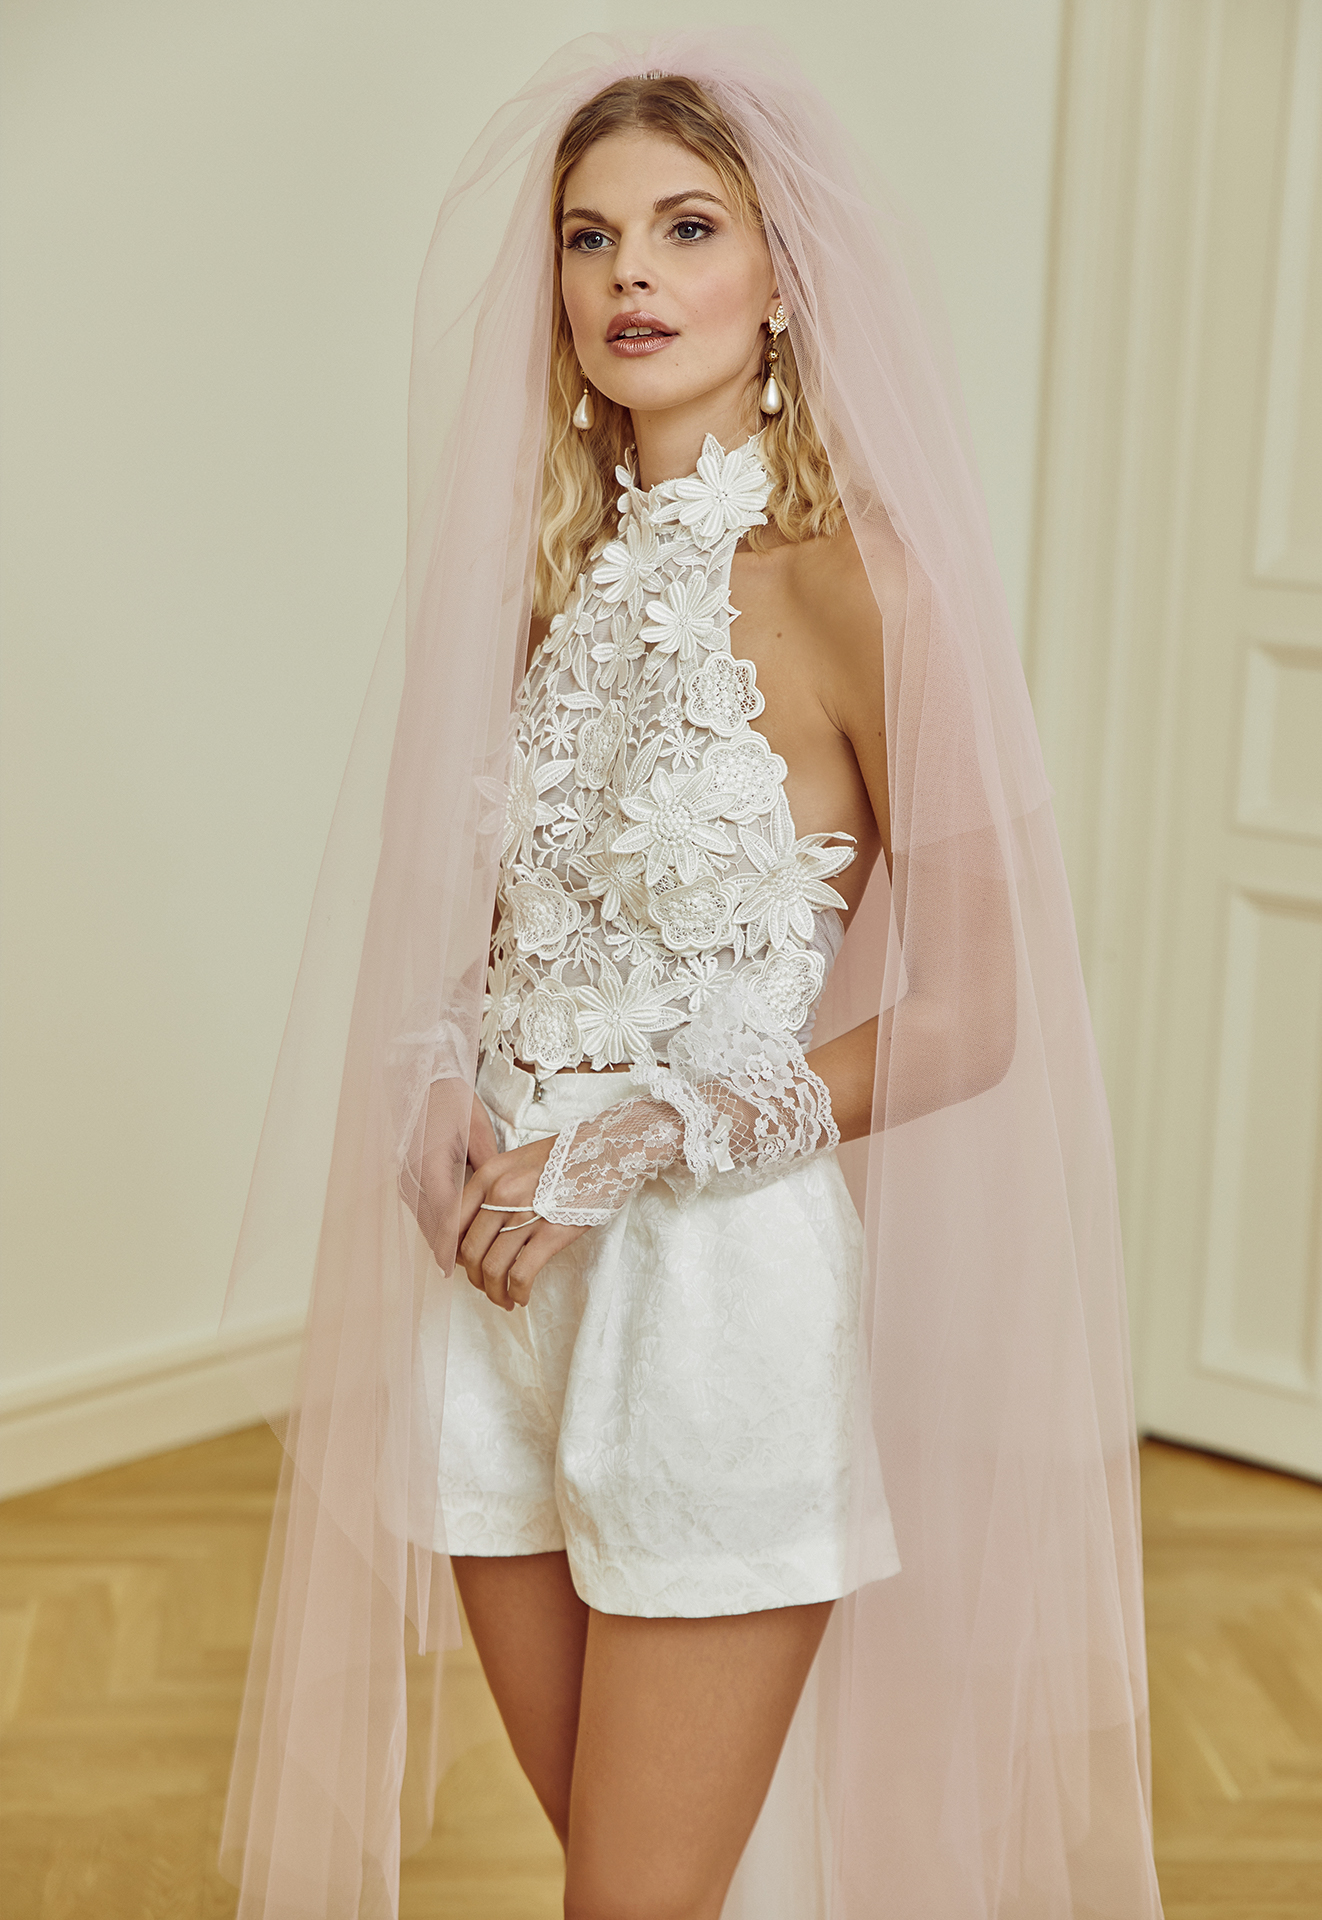 A meseszép menyasszonyi ruhák tervezője, Sármán Nóra a következő szezonra  valami igazán különleges álmodott meg - Glamour